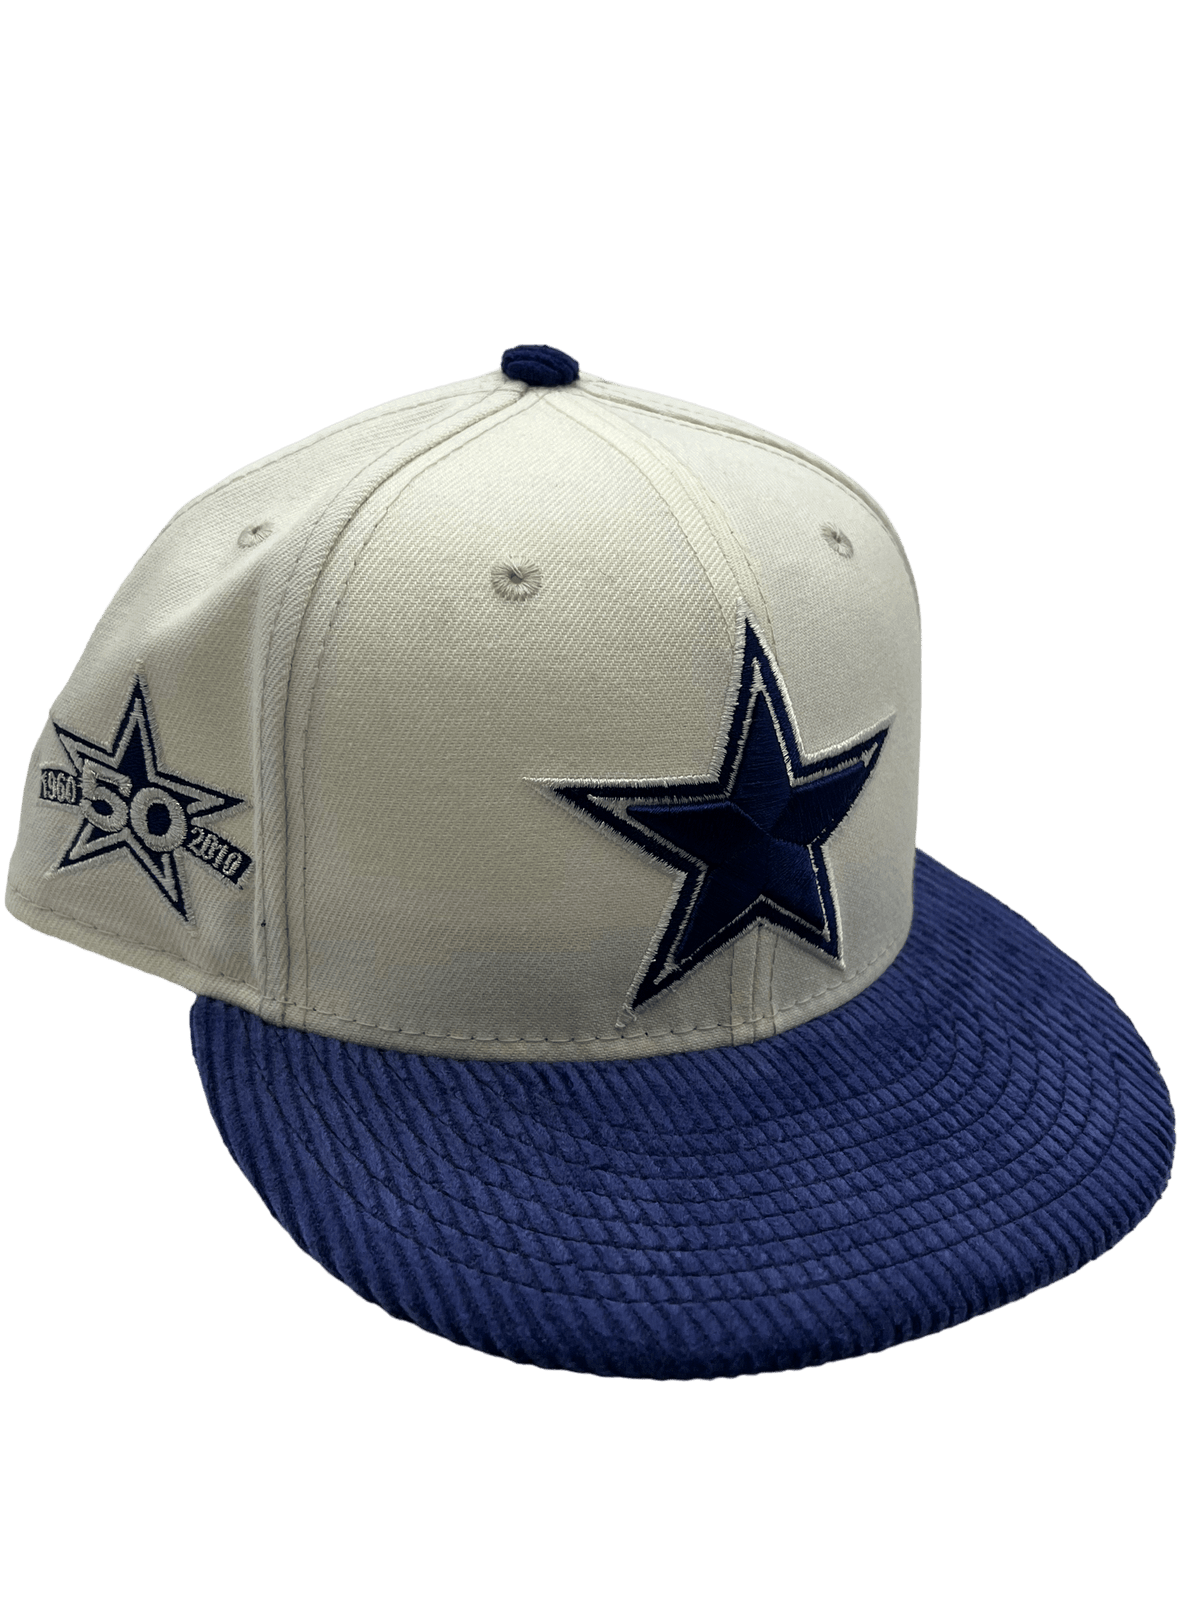 1960 dallas cowboys hat